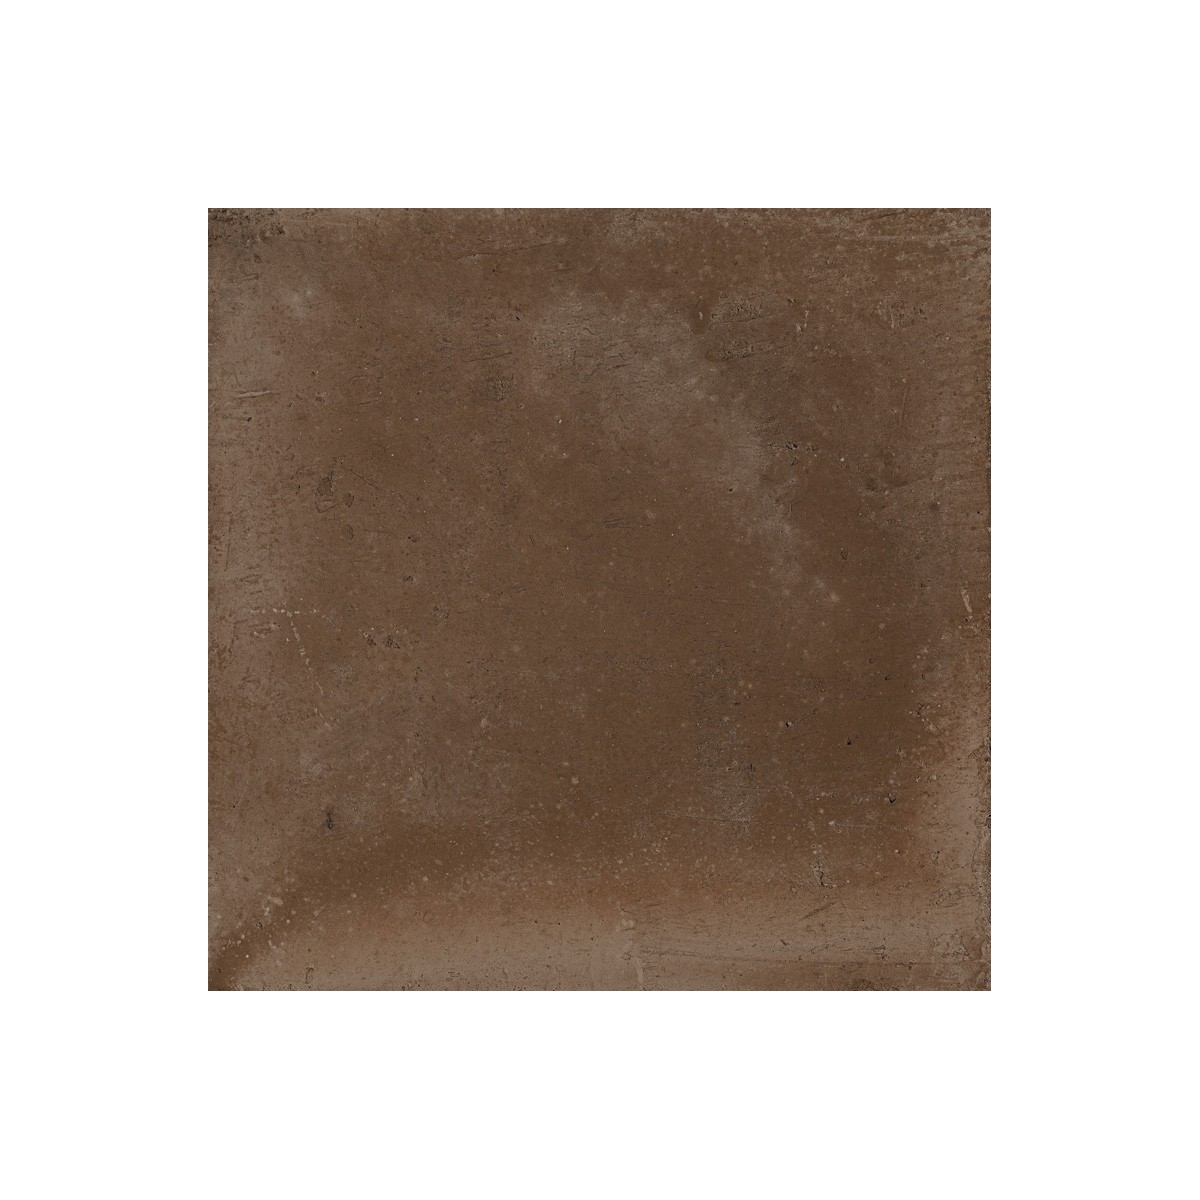 Imitação de pavimento hidráulico Gaya Fores - Rustic Moka 33,15x33,15 cm (caixa 1,32 m2)